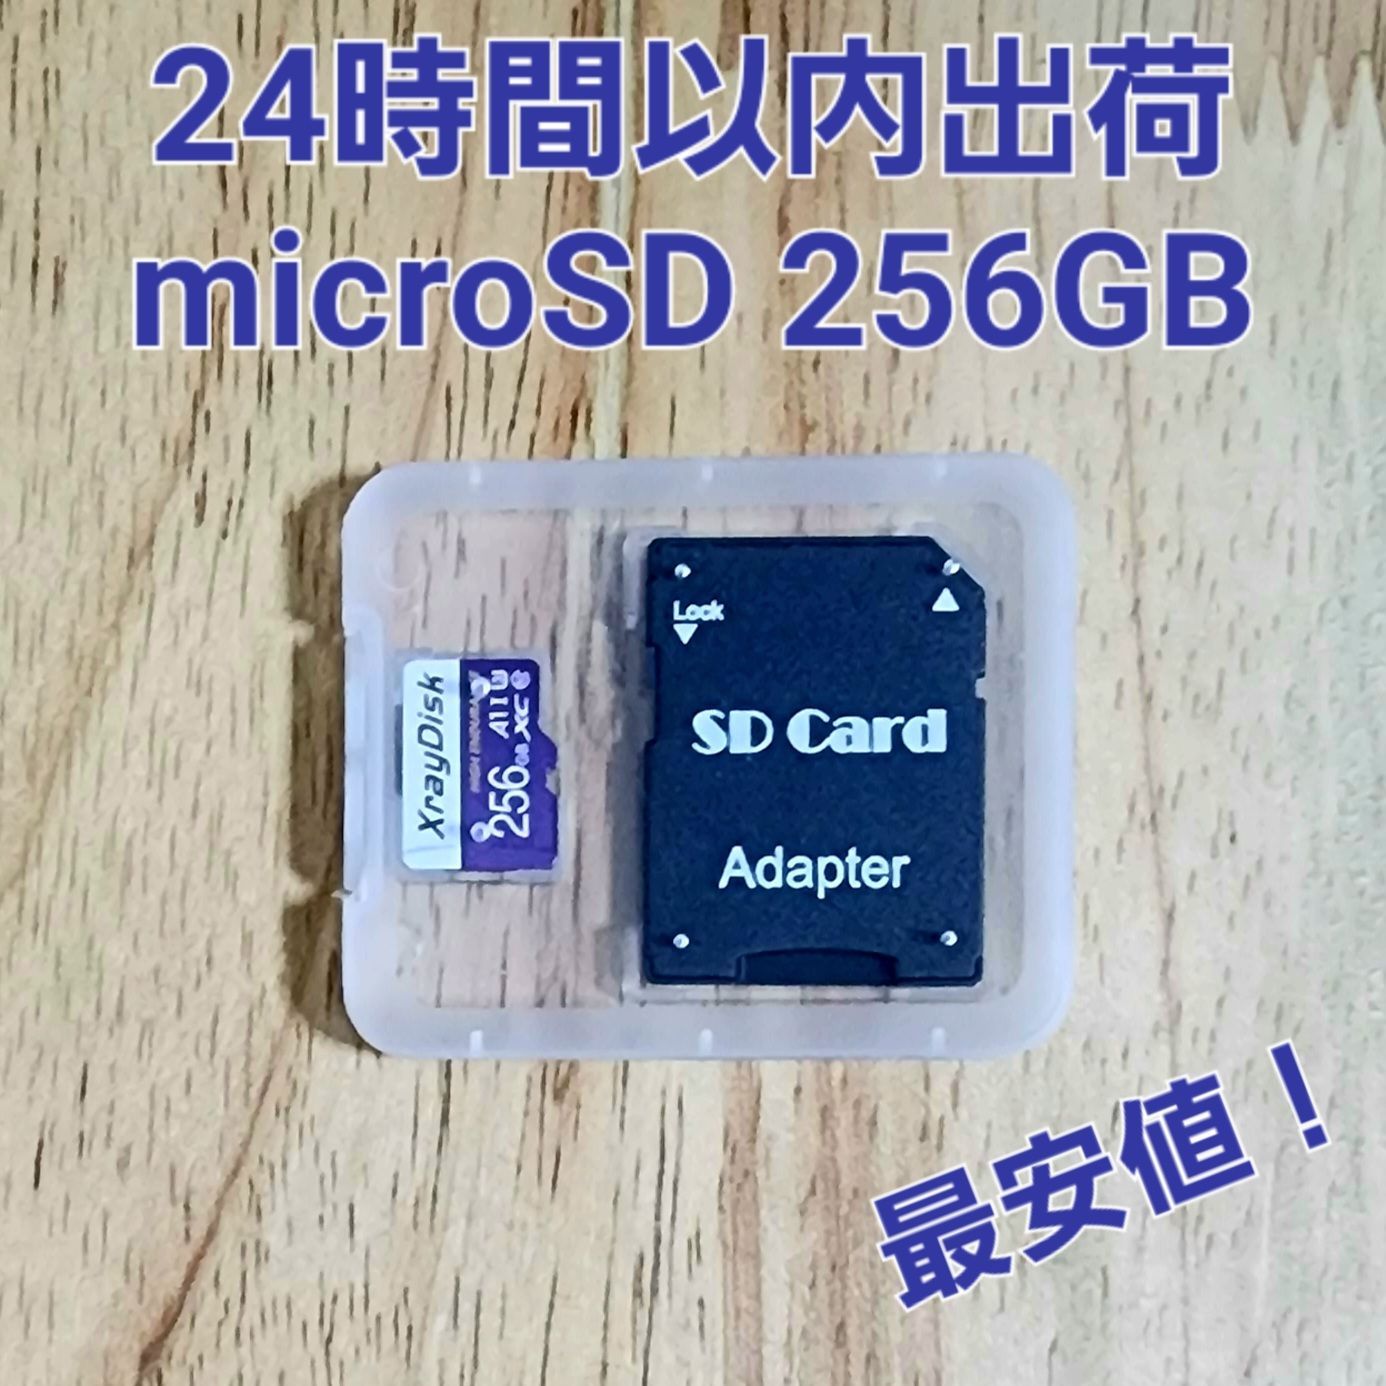 24時間以内出荷 microSDカード 32GB マイクロSD